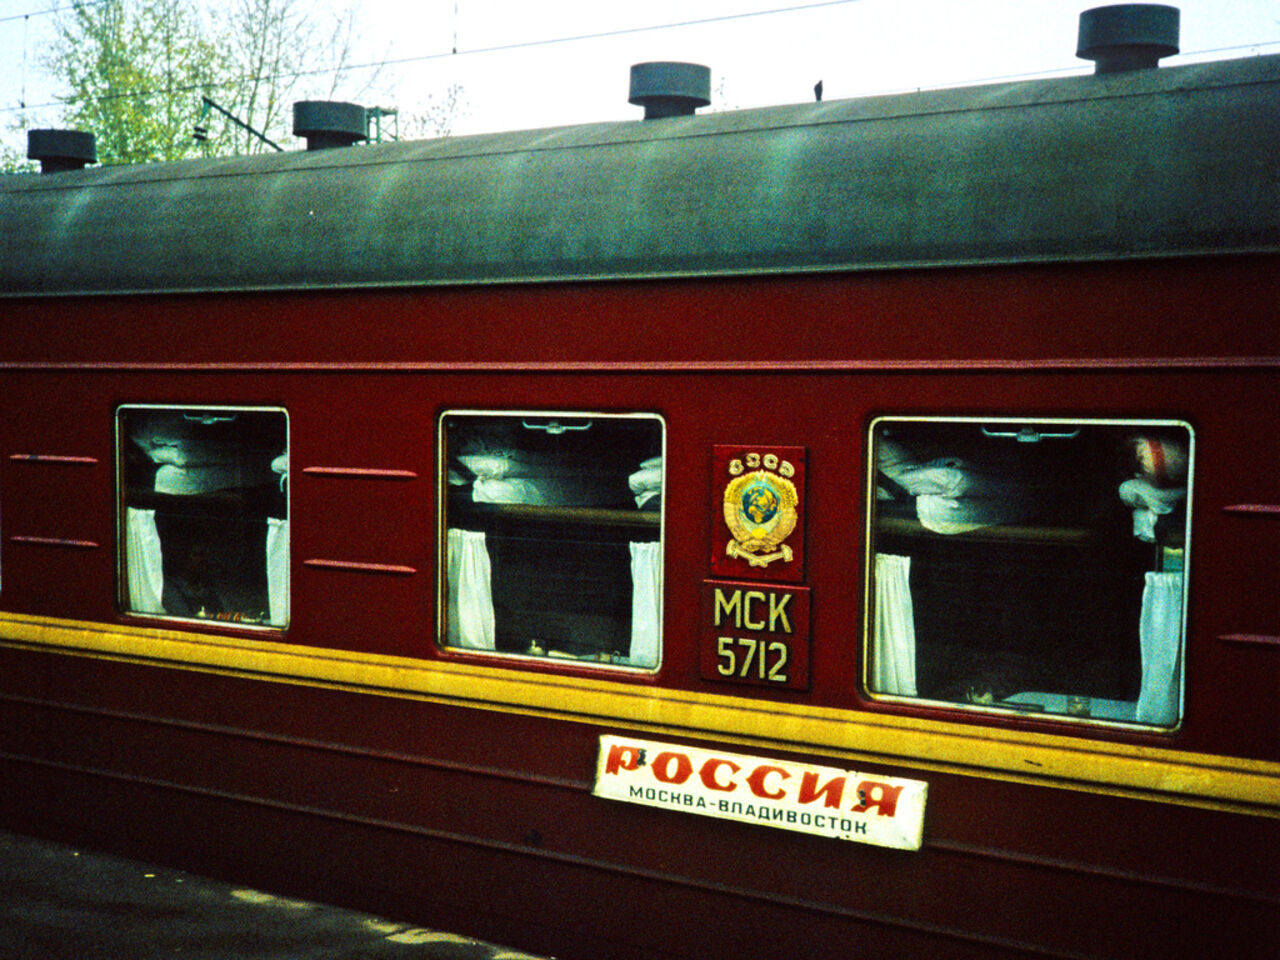 поезд москва вюнсдорф